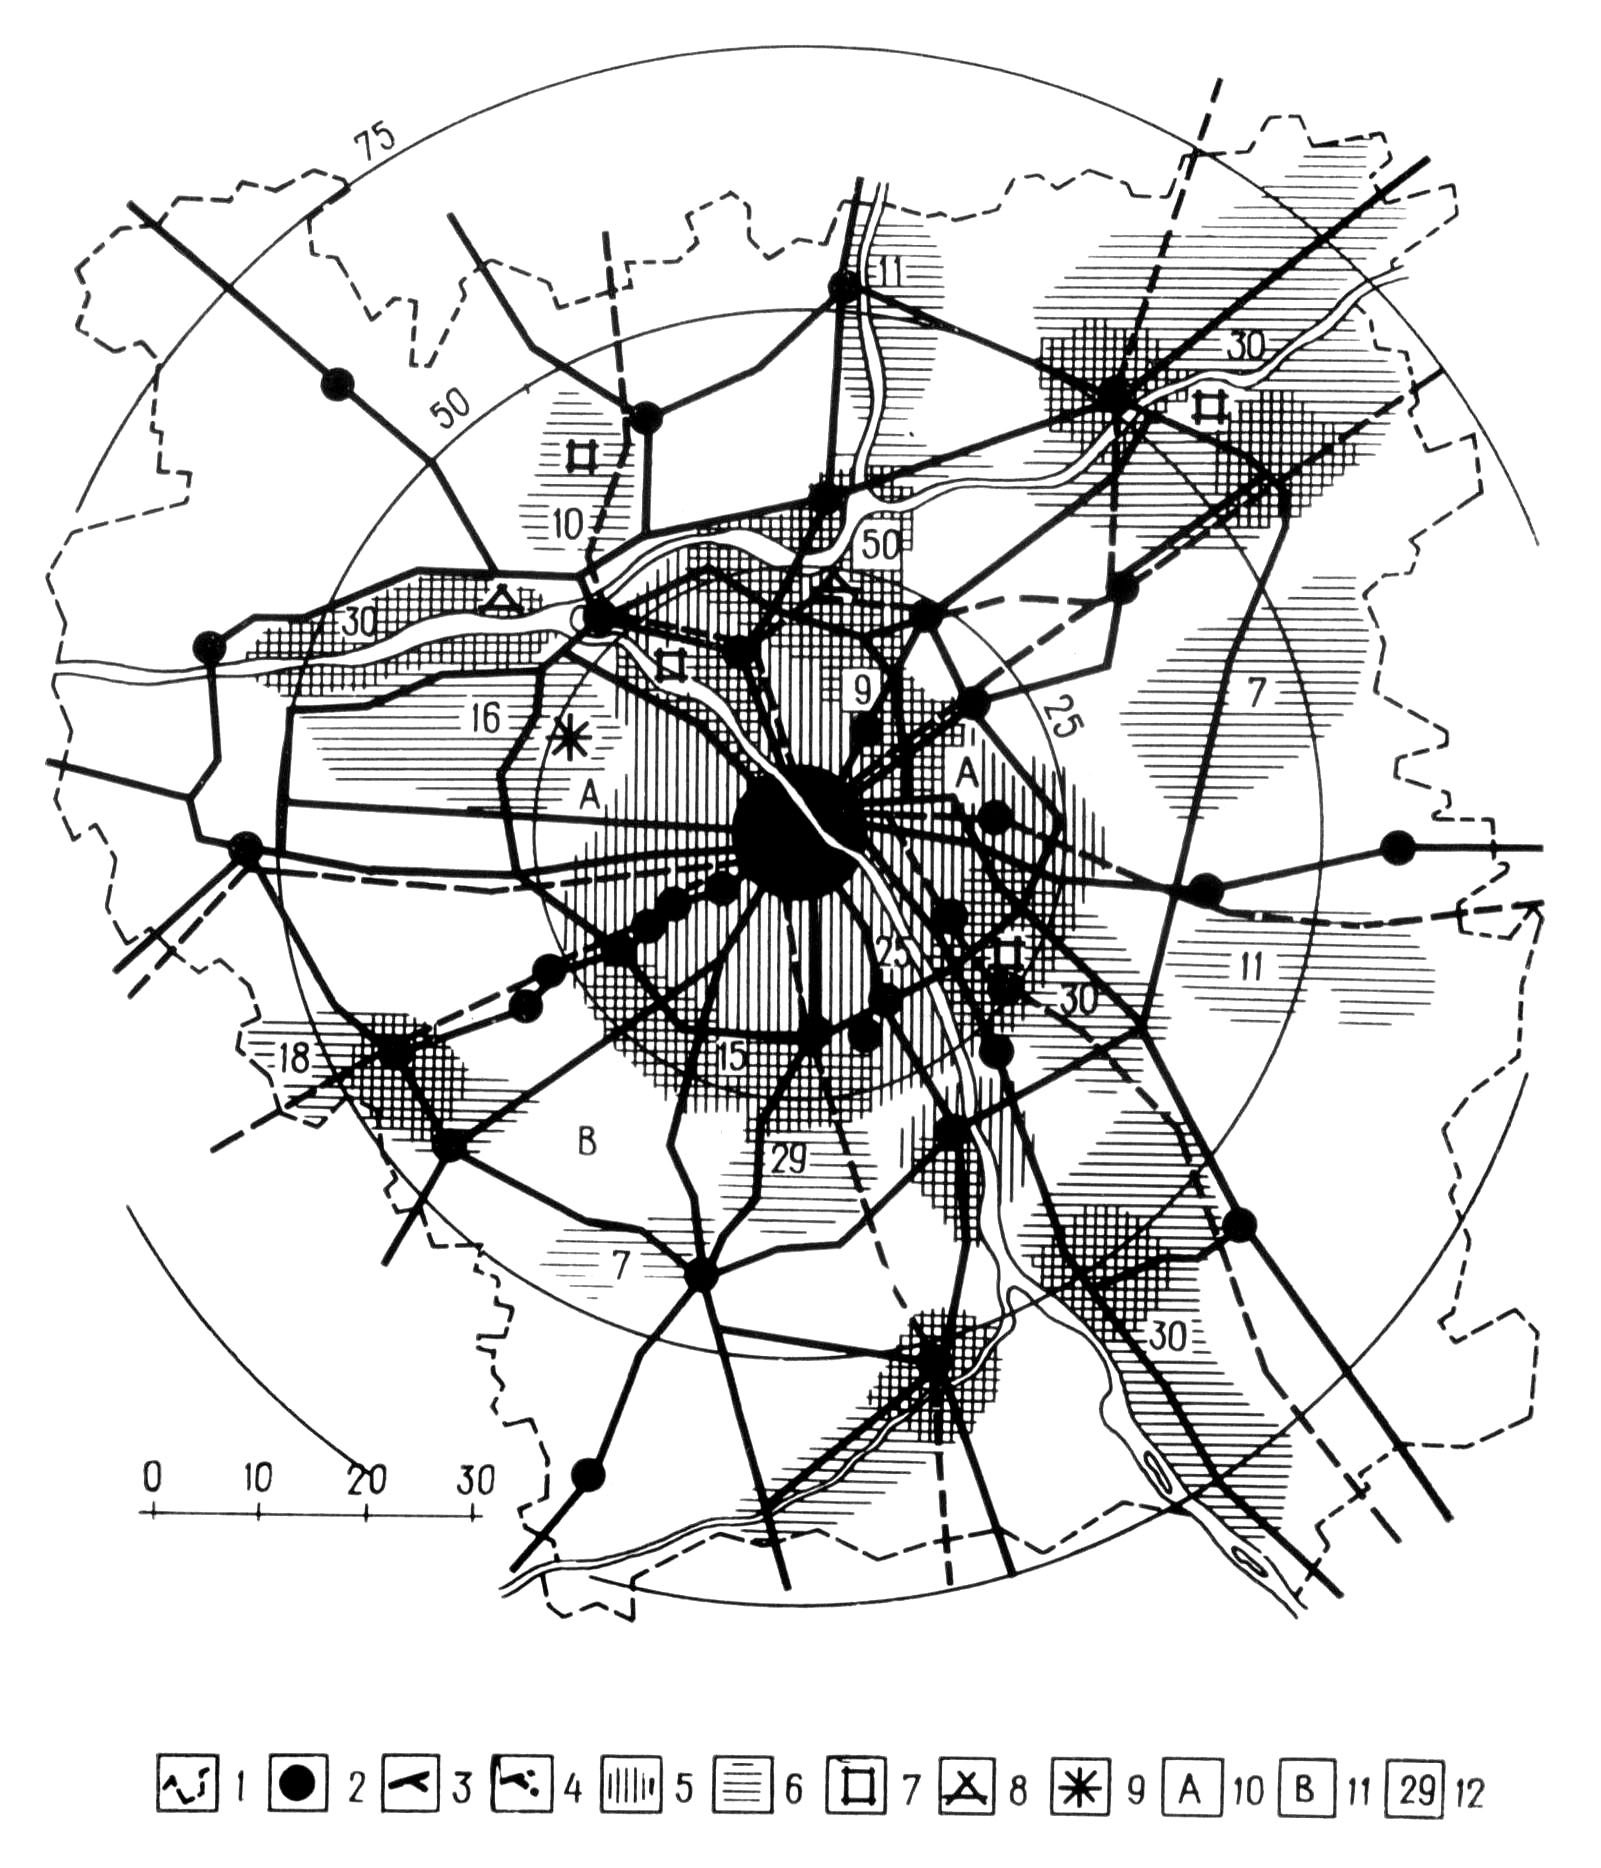 Пригородная зона отдыха Варшавы. Схема планировки (на 1985 г.). Разработана коллективом под руководством Б. Круля